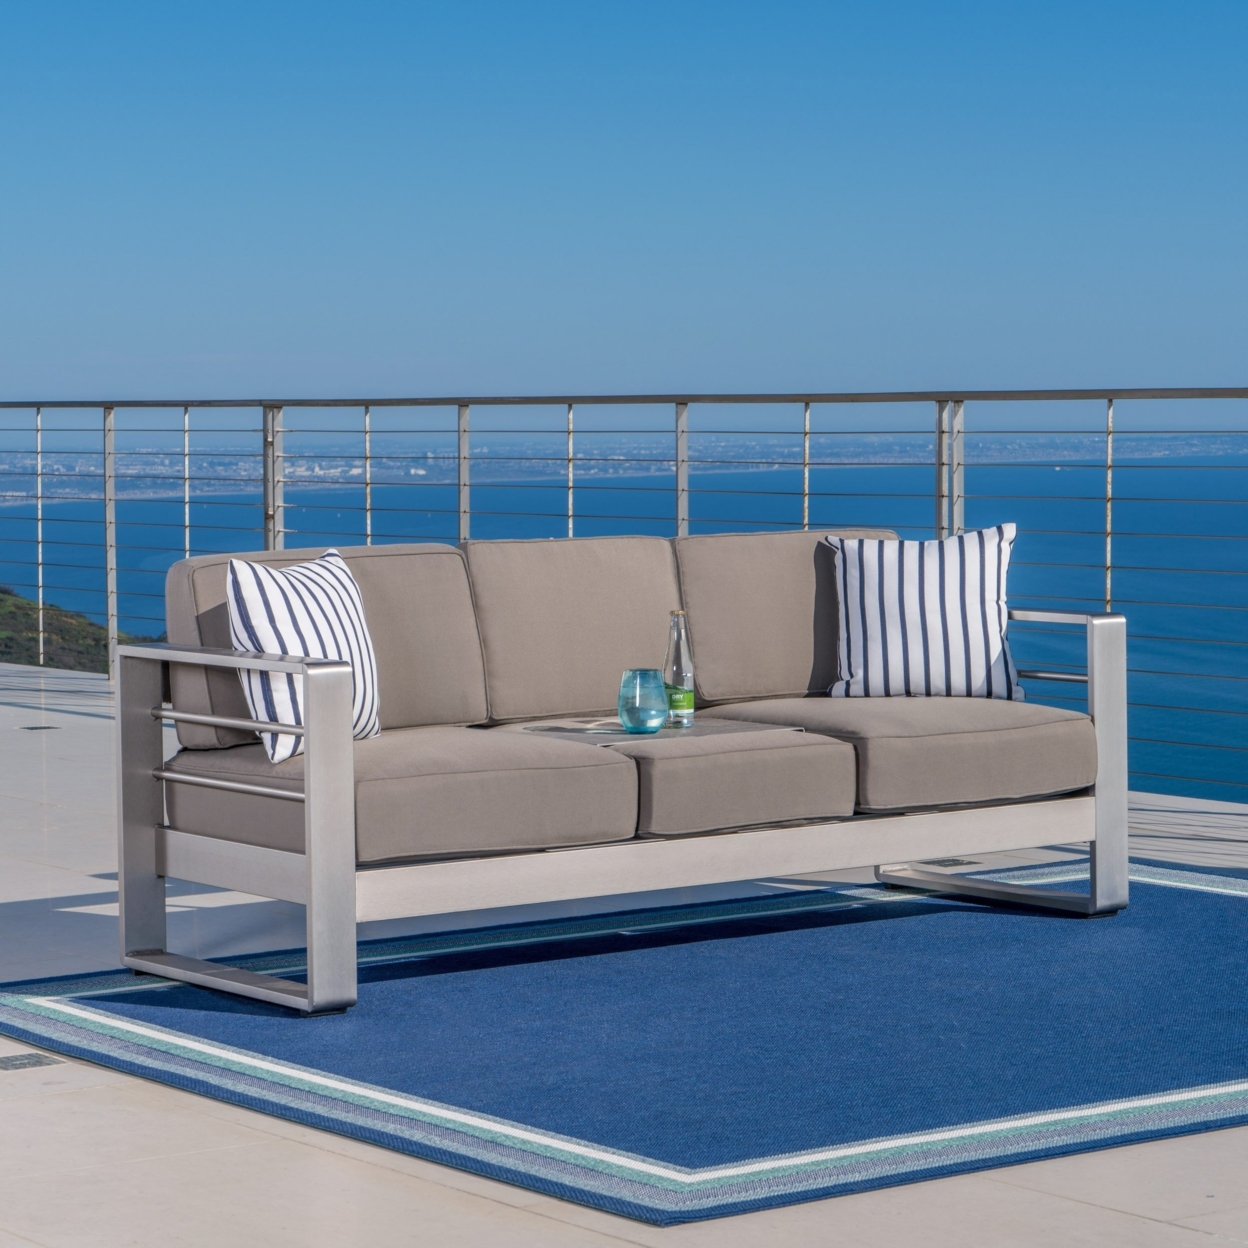 Crested Bay Outdoor Aluminum Khaki Sofa With Tray